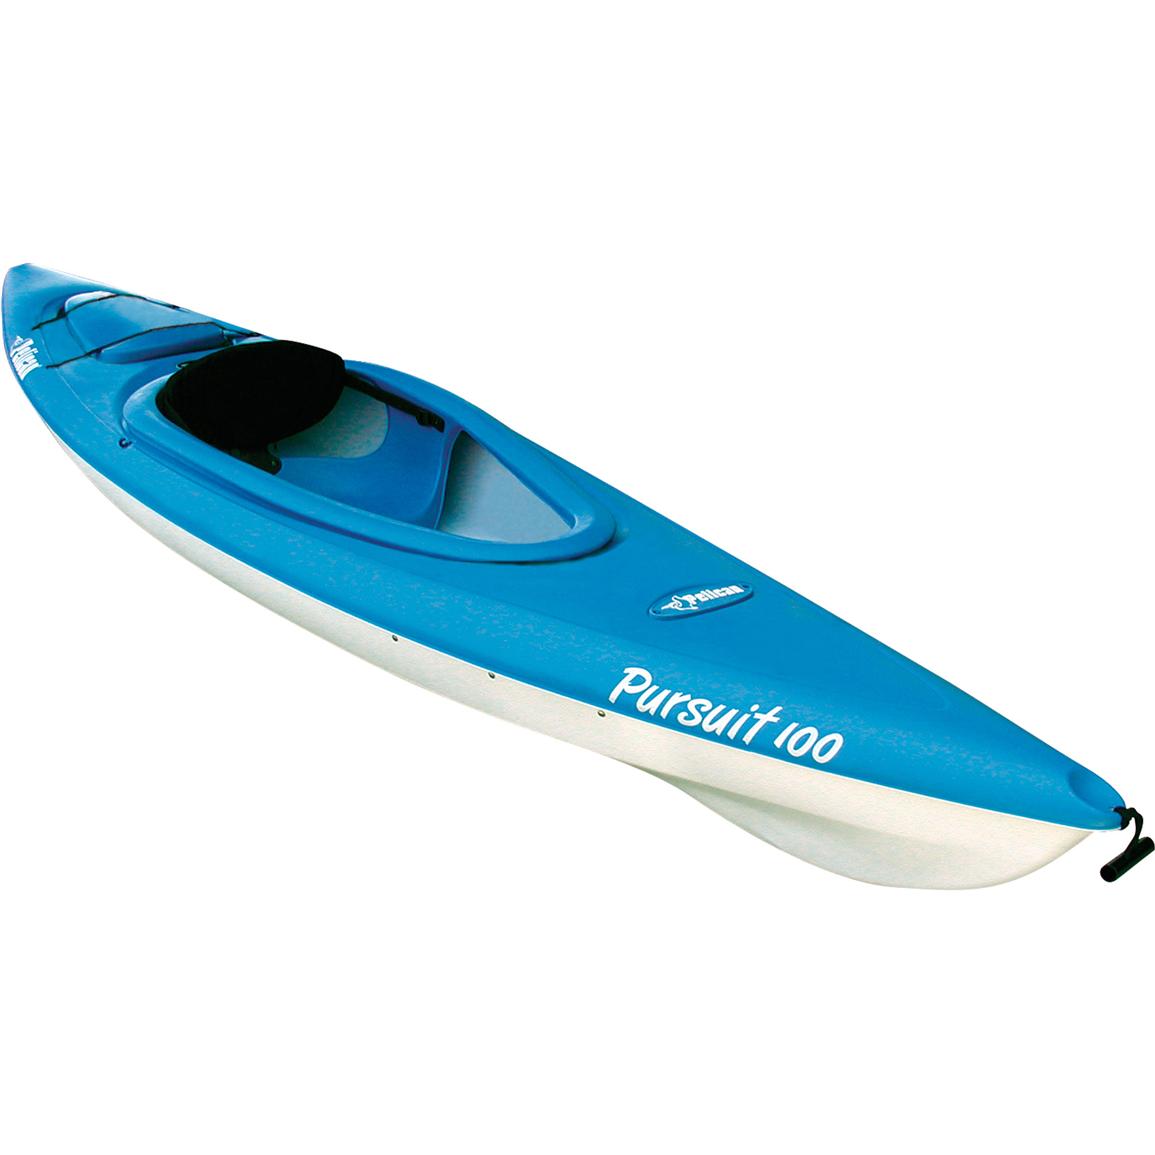 Pelican® Pursuit™ 100 Deluxe Sit - In Kayak - 124666 